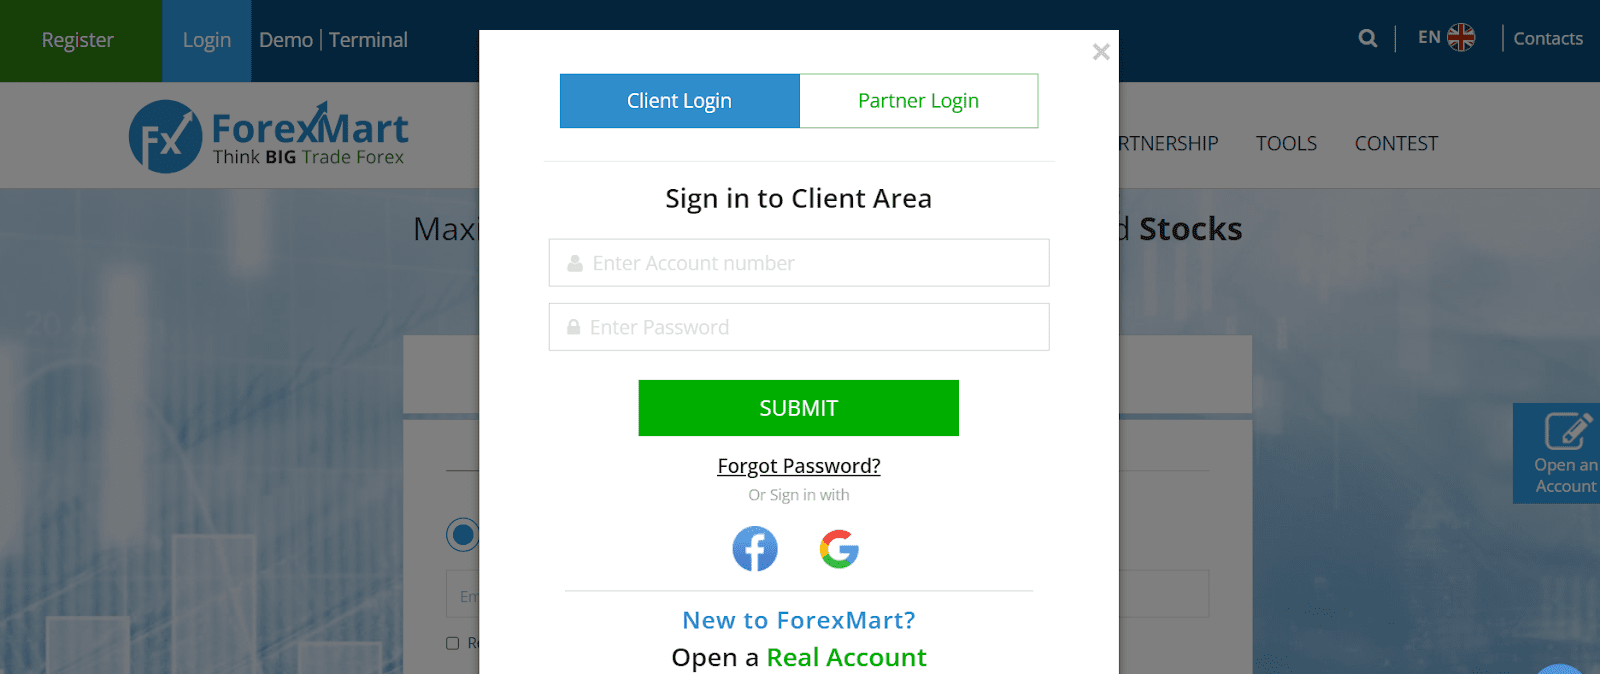 ForexMart की समीक्षा करें - लॉग इन करें